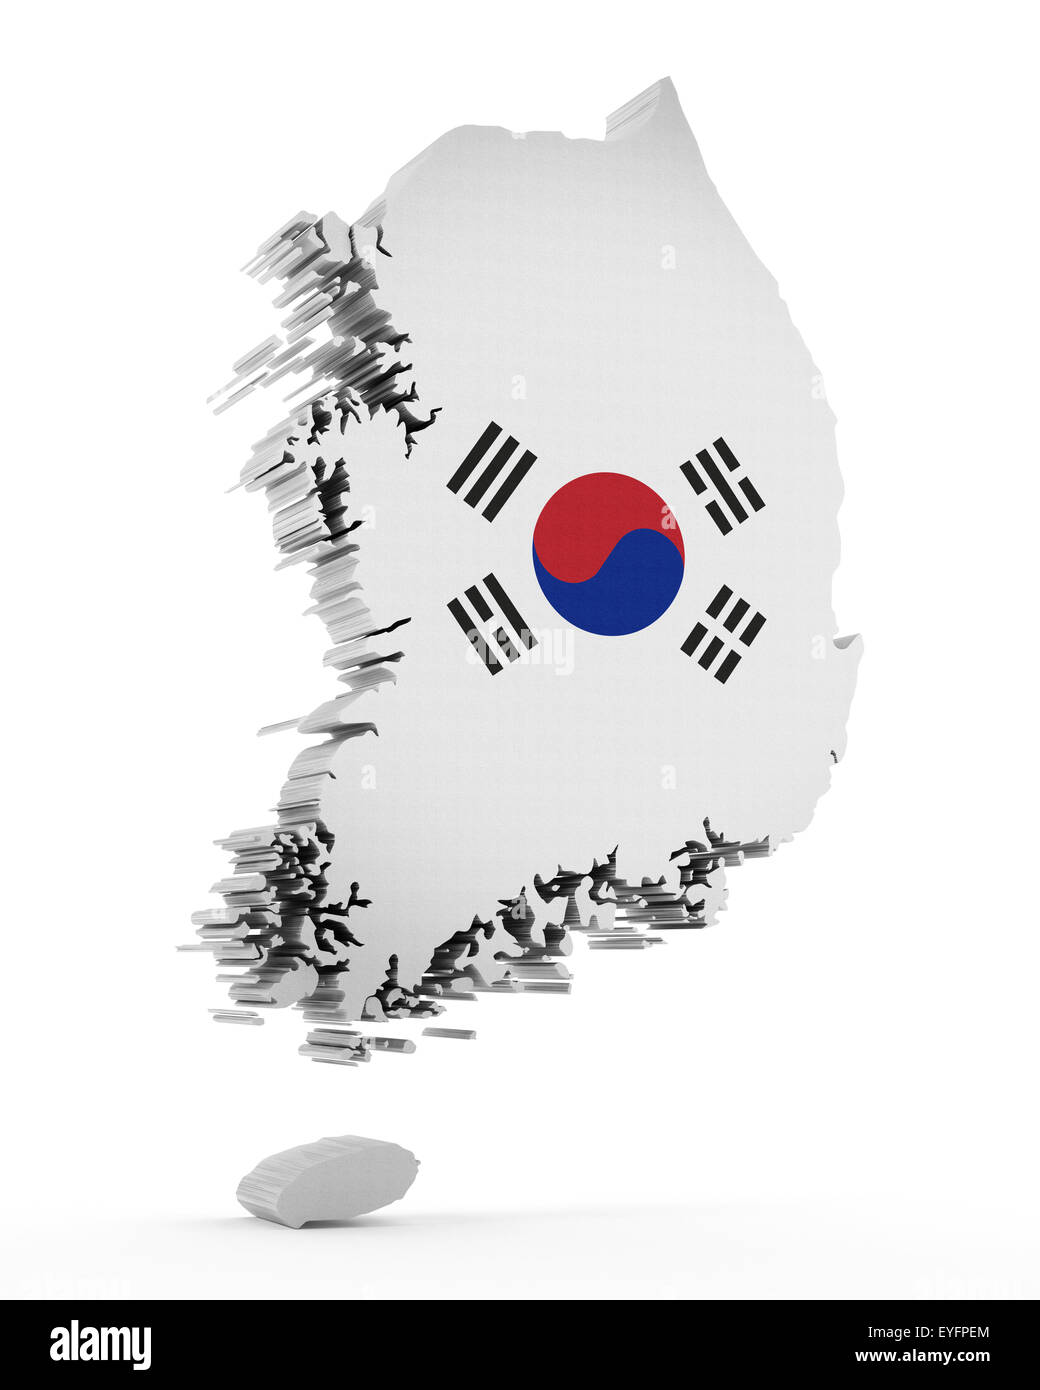 Corea del Sud mappa e bandiera isolati su sfondo bianco Foto Stock